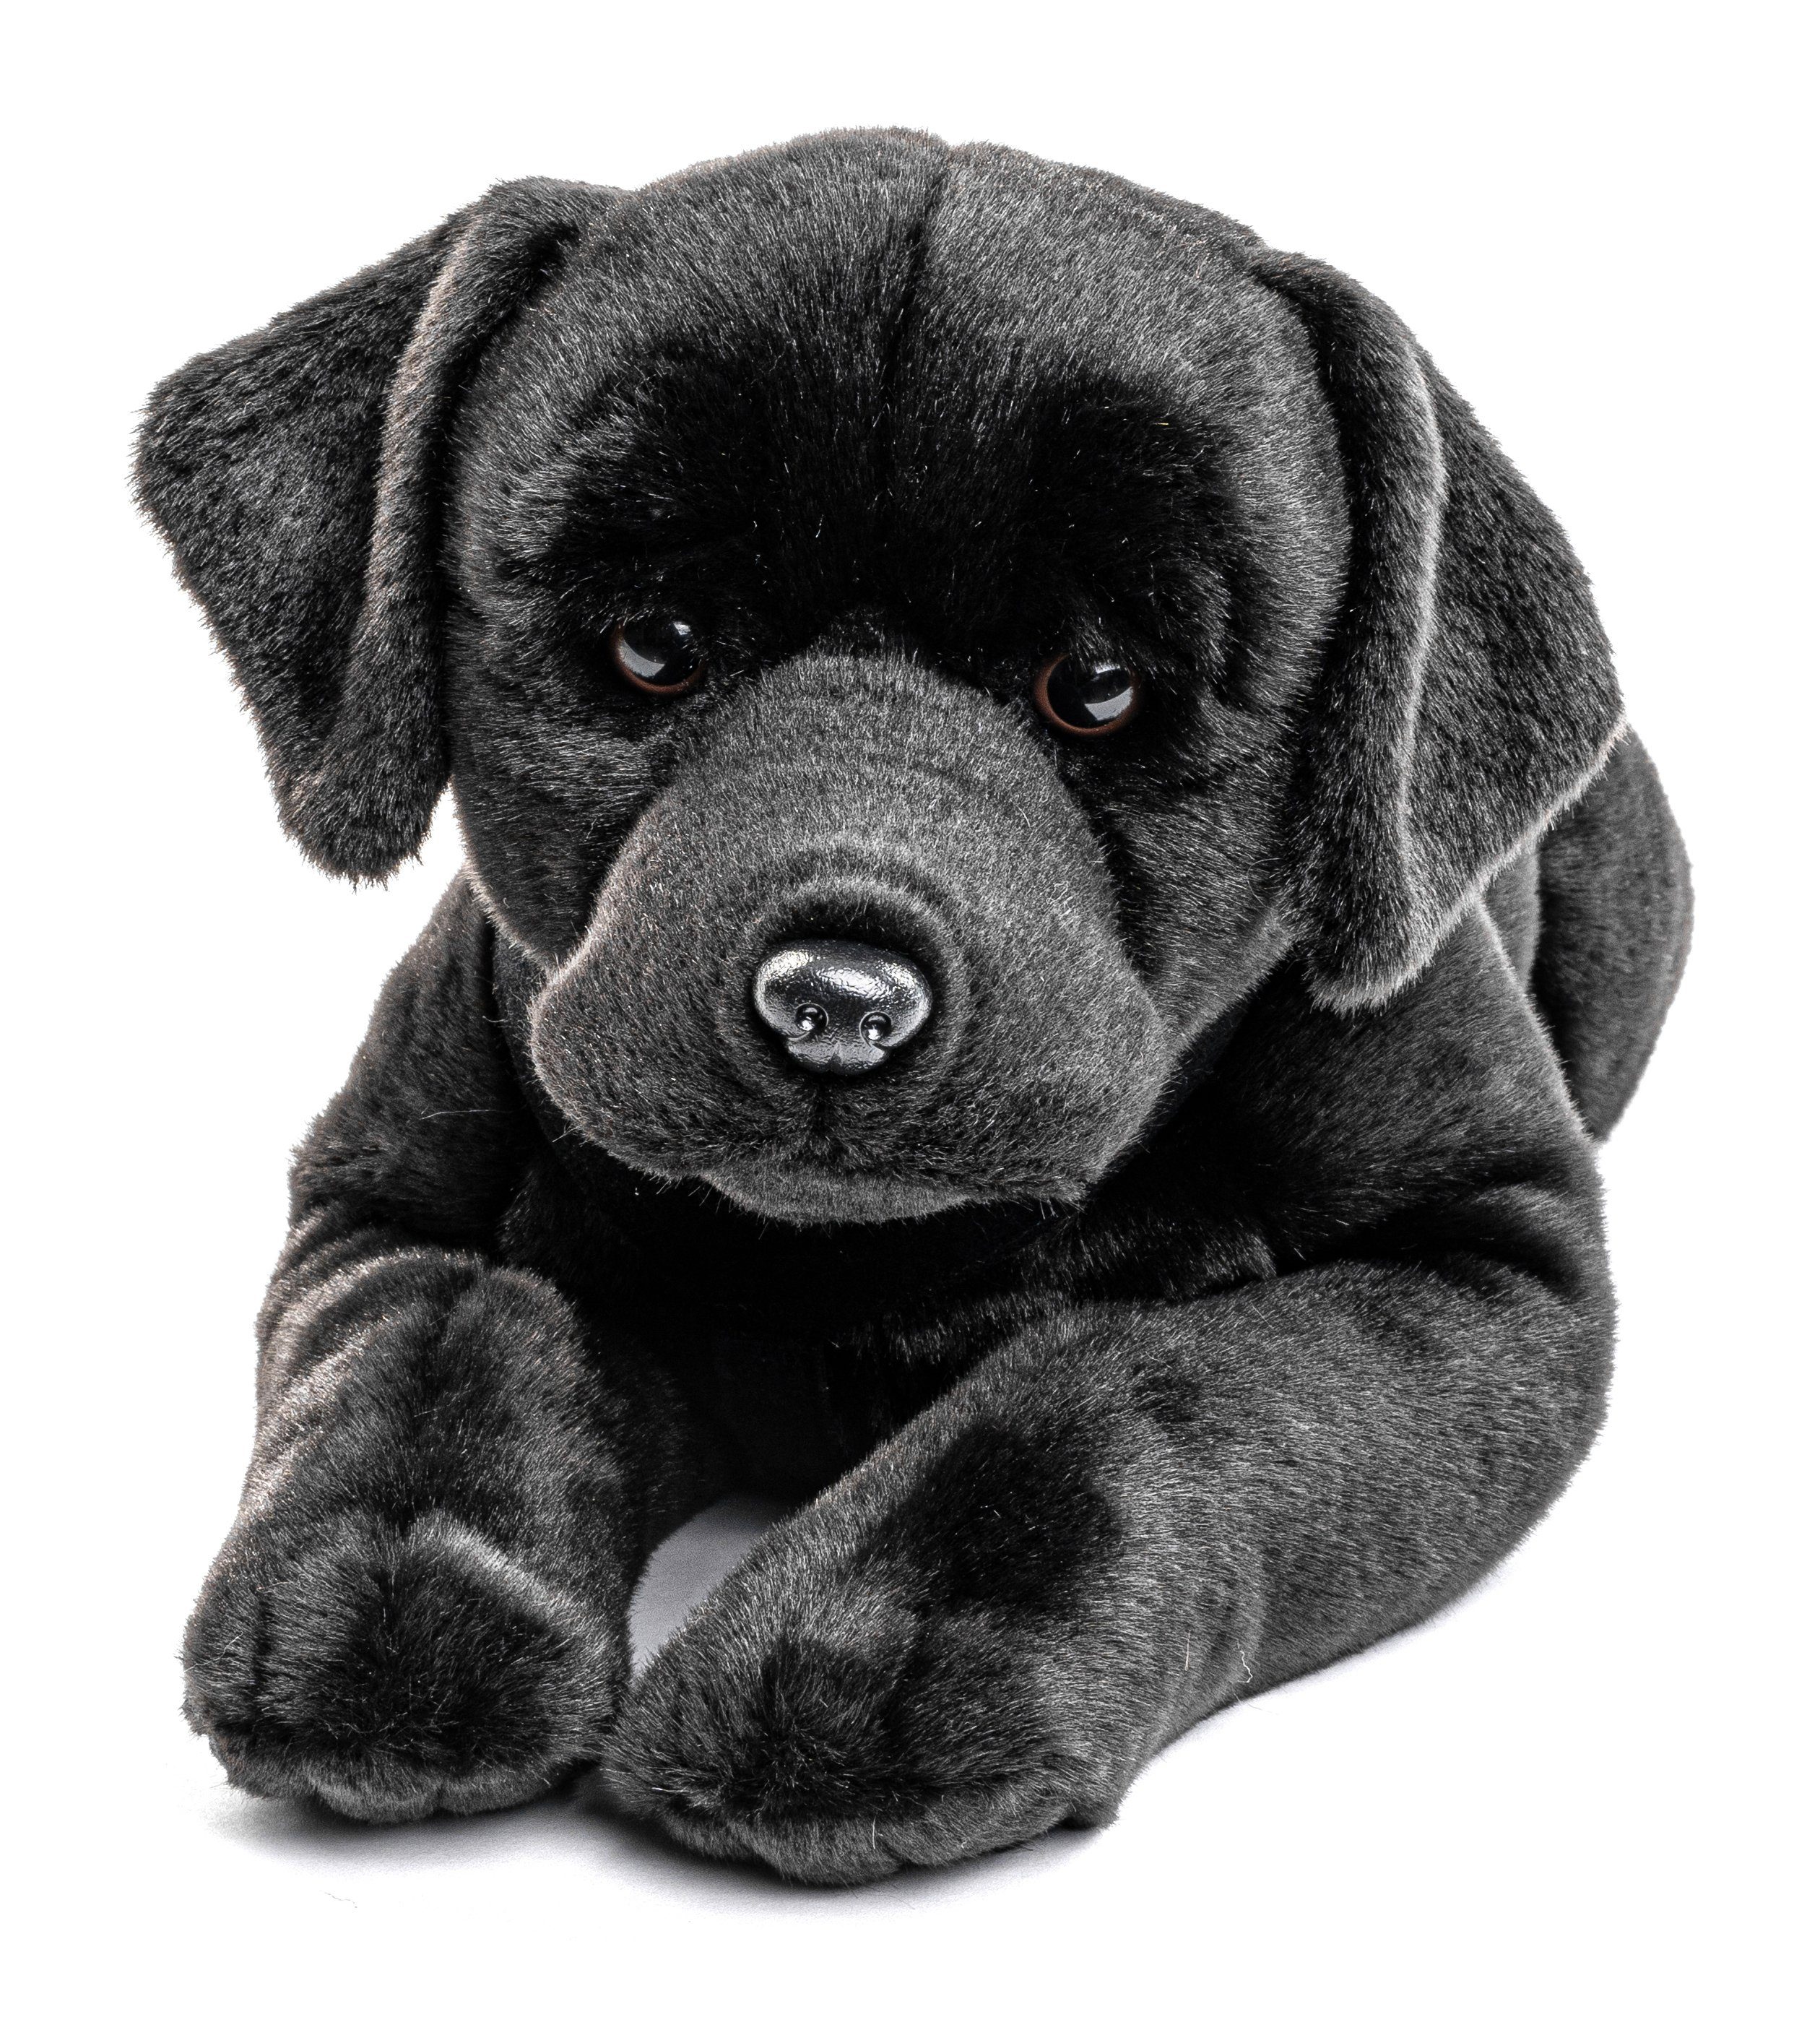 Uni-Toys Kuscheltier Labrador, liegend - braun o. schwarz - 60 cm - Plüsch-Hund, Plüschtier, zu 100 % recyceltes Füllmaterial